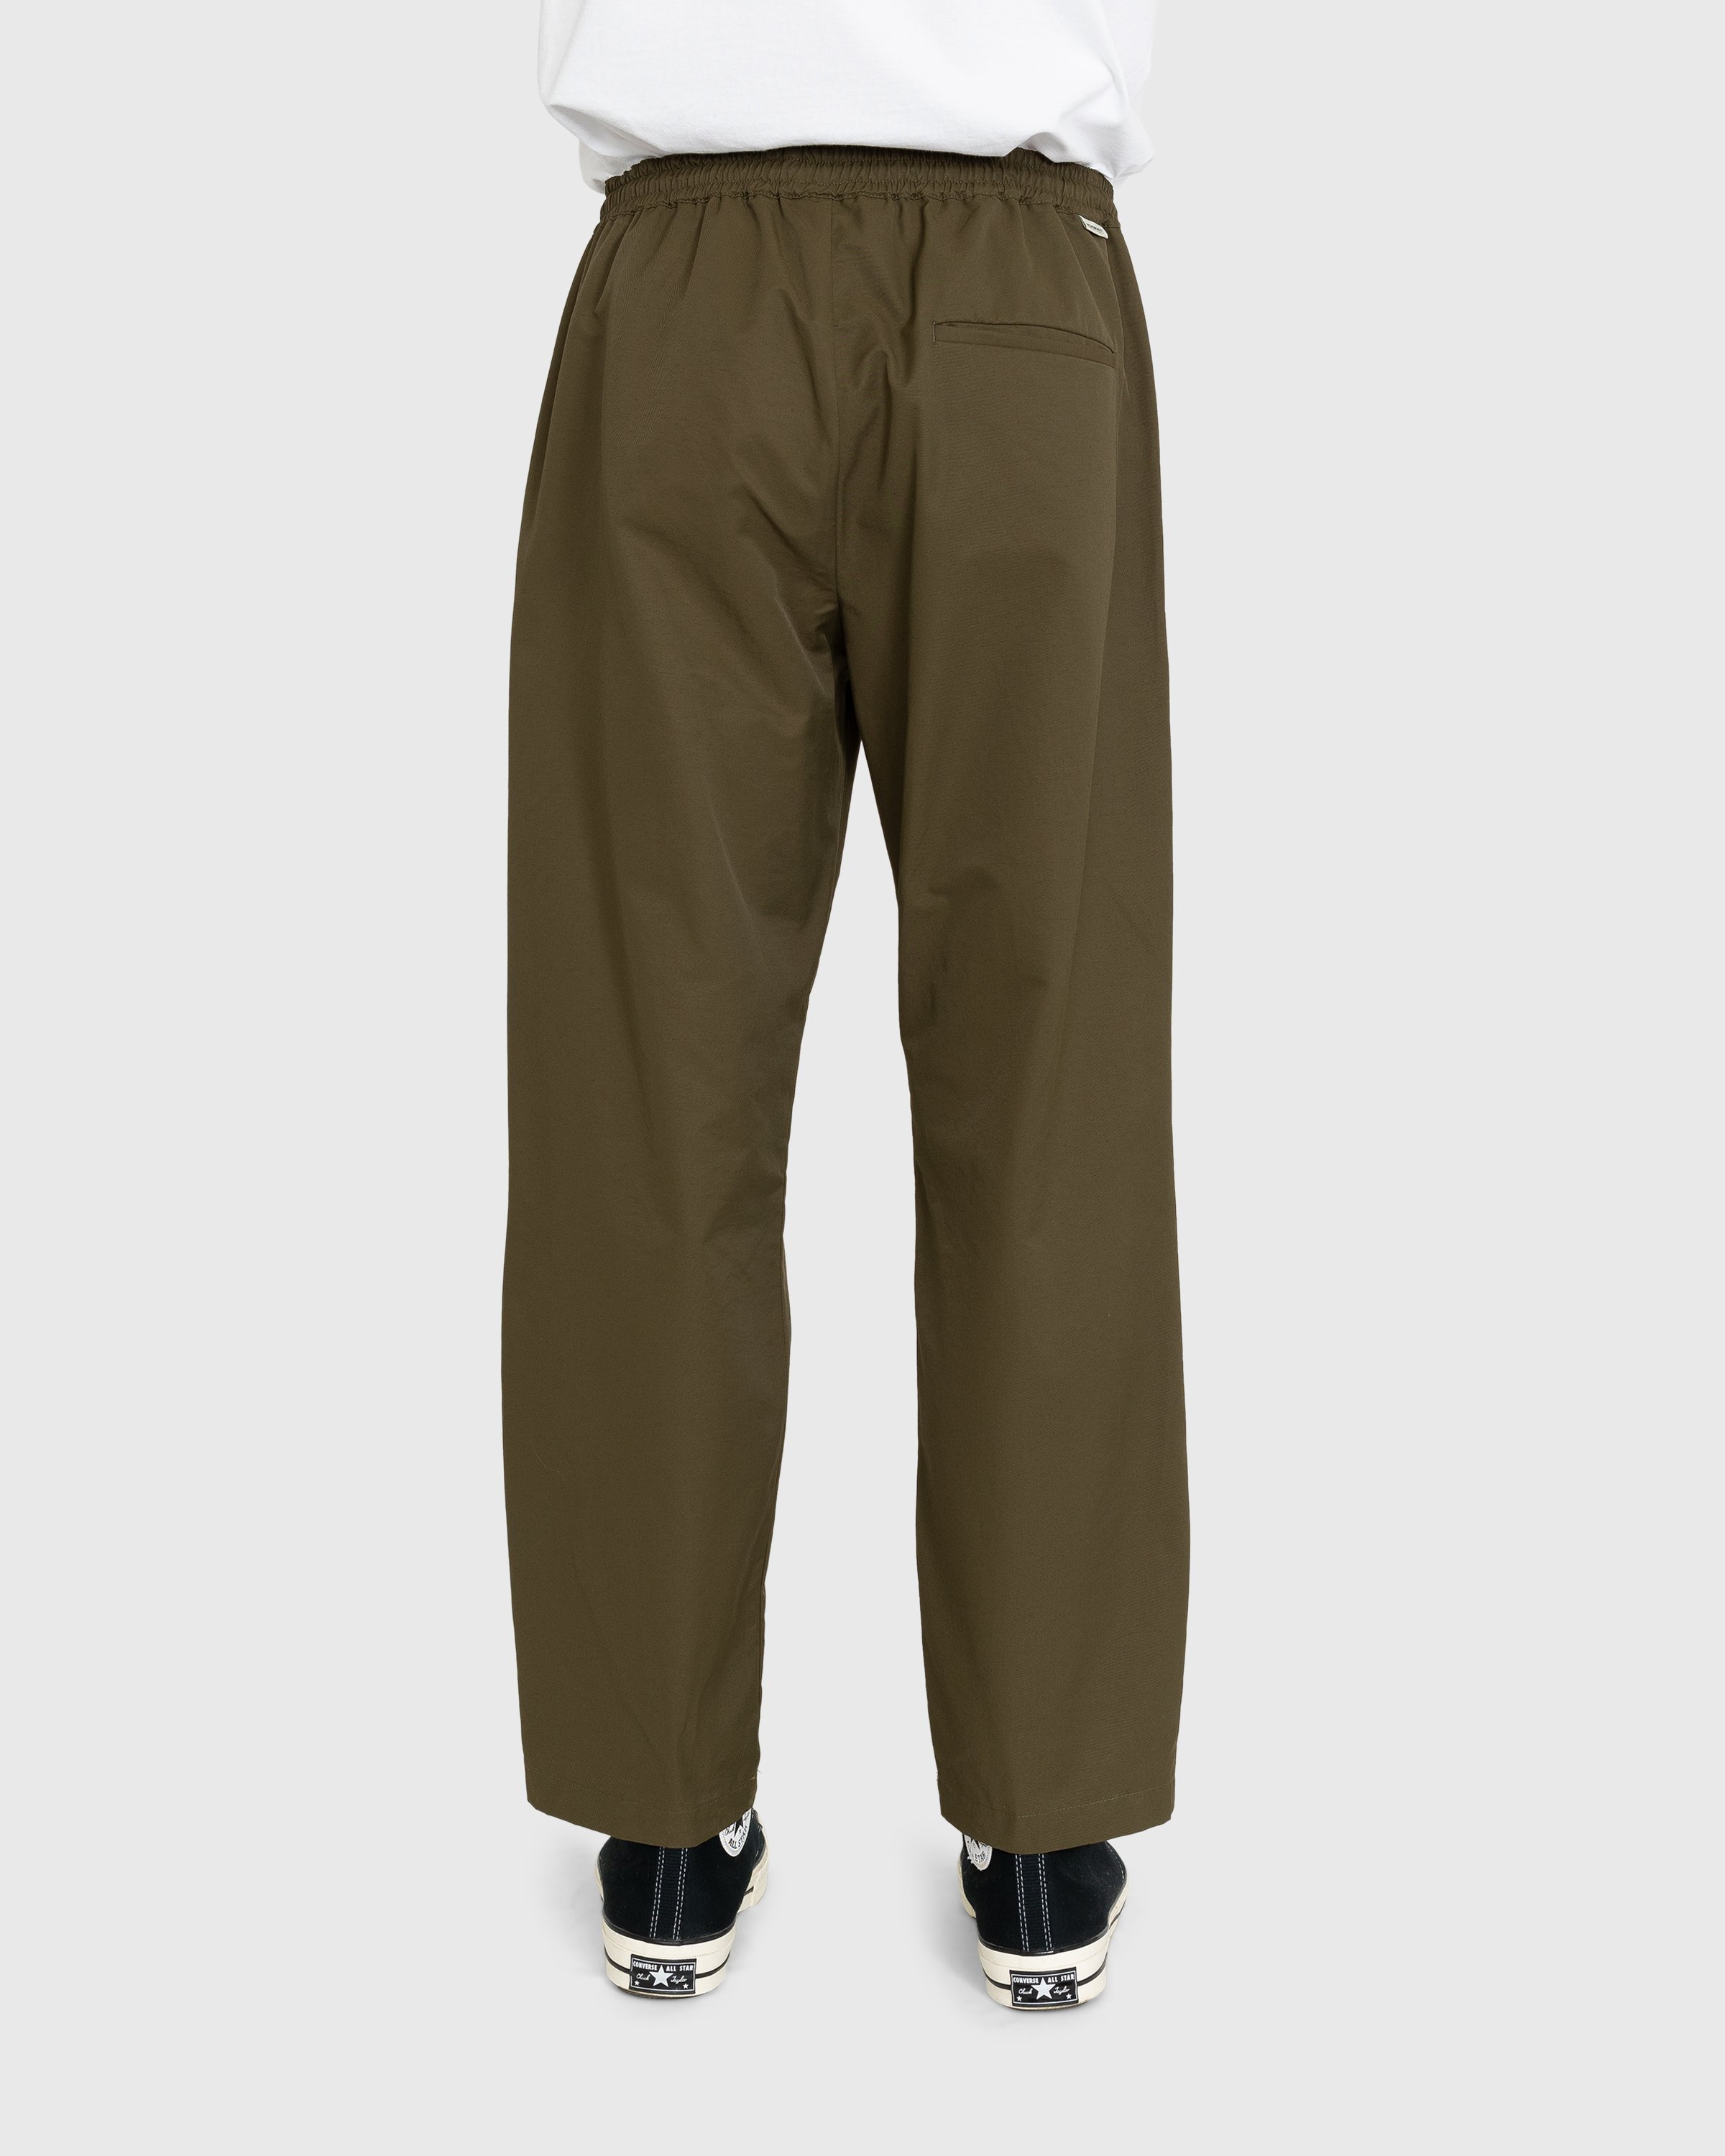 Highsnobiety - Cotton Nylon Elastic Pants Olive - Clothing - Green - Image 4